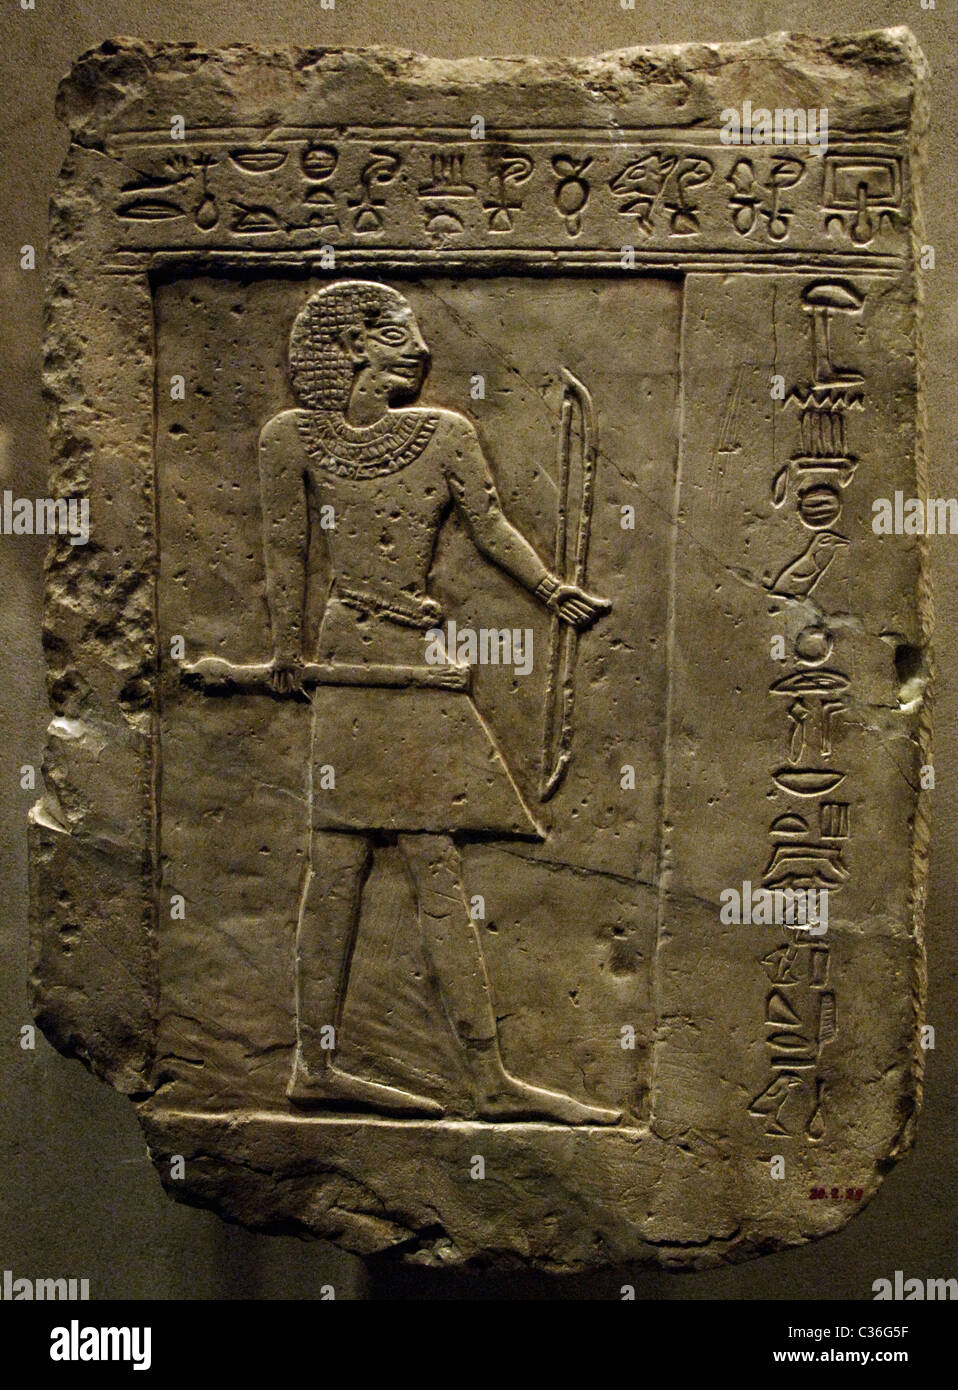 L'art égyptien de la Stèle funéraire Bowman Semin. Première Période Intermédiaire. 11e dynastie. Règne de Intef I-III. Banque D'Images